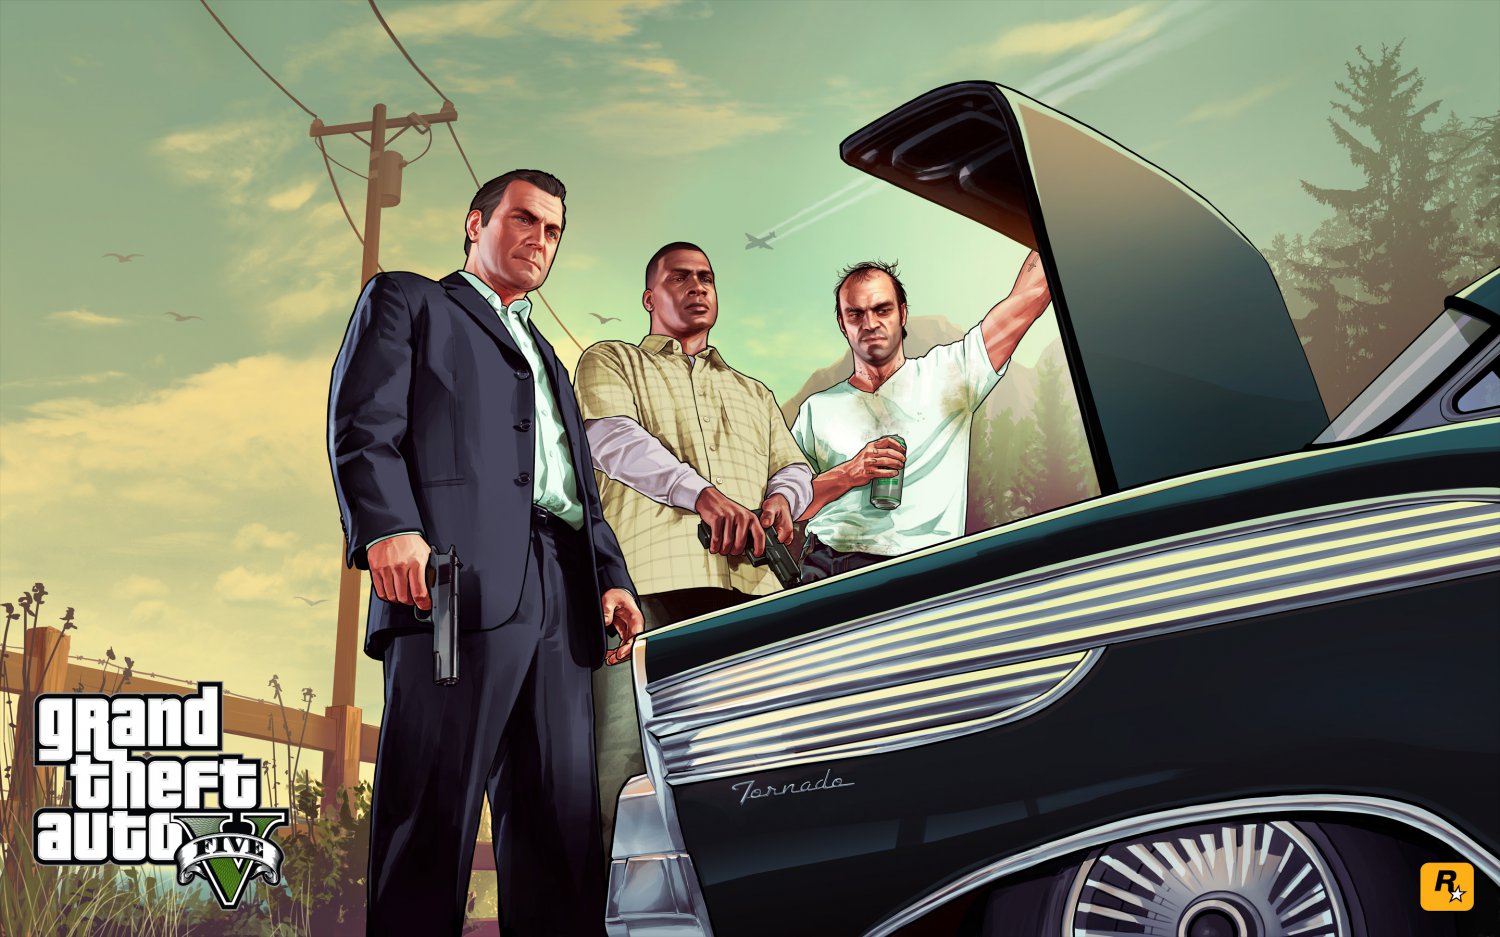 Grand Theft Auto 5 V Game 13"x19" (32cm/49cm) Poster